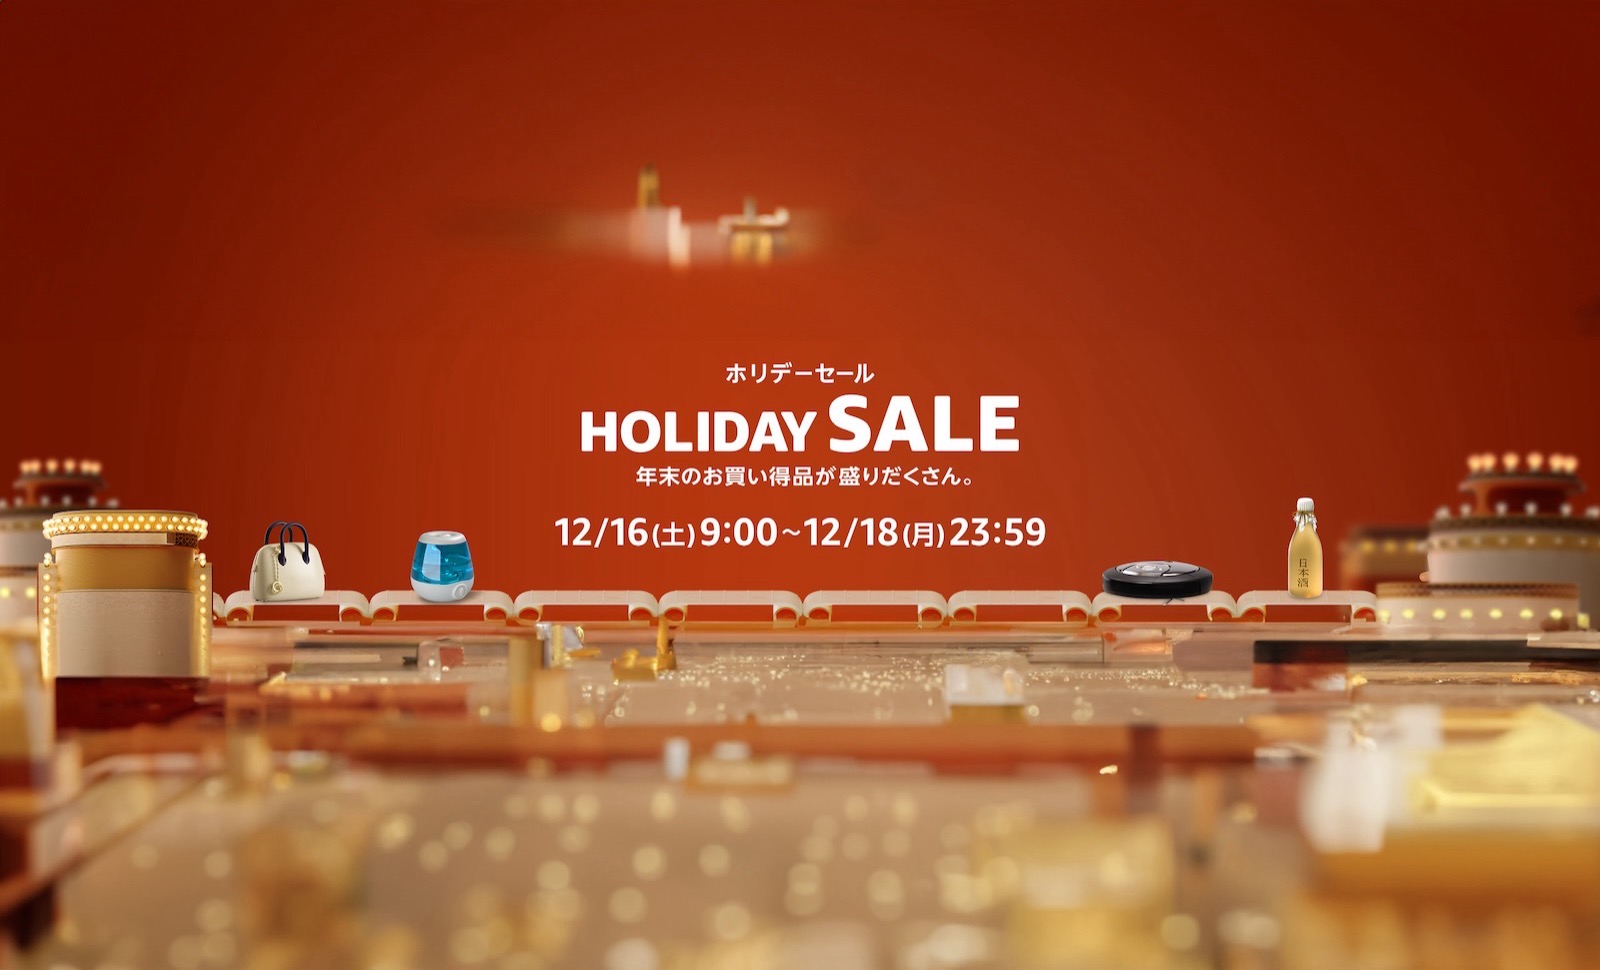 Holiday sale amazon photoshopped